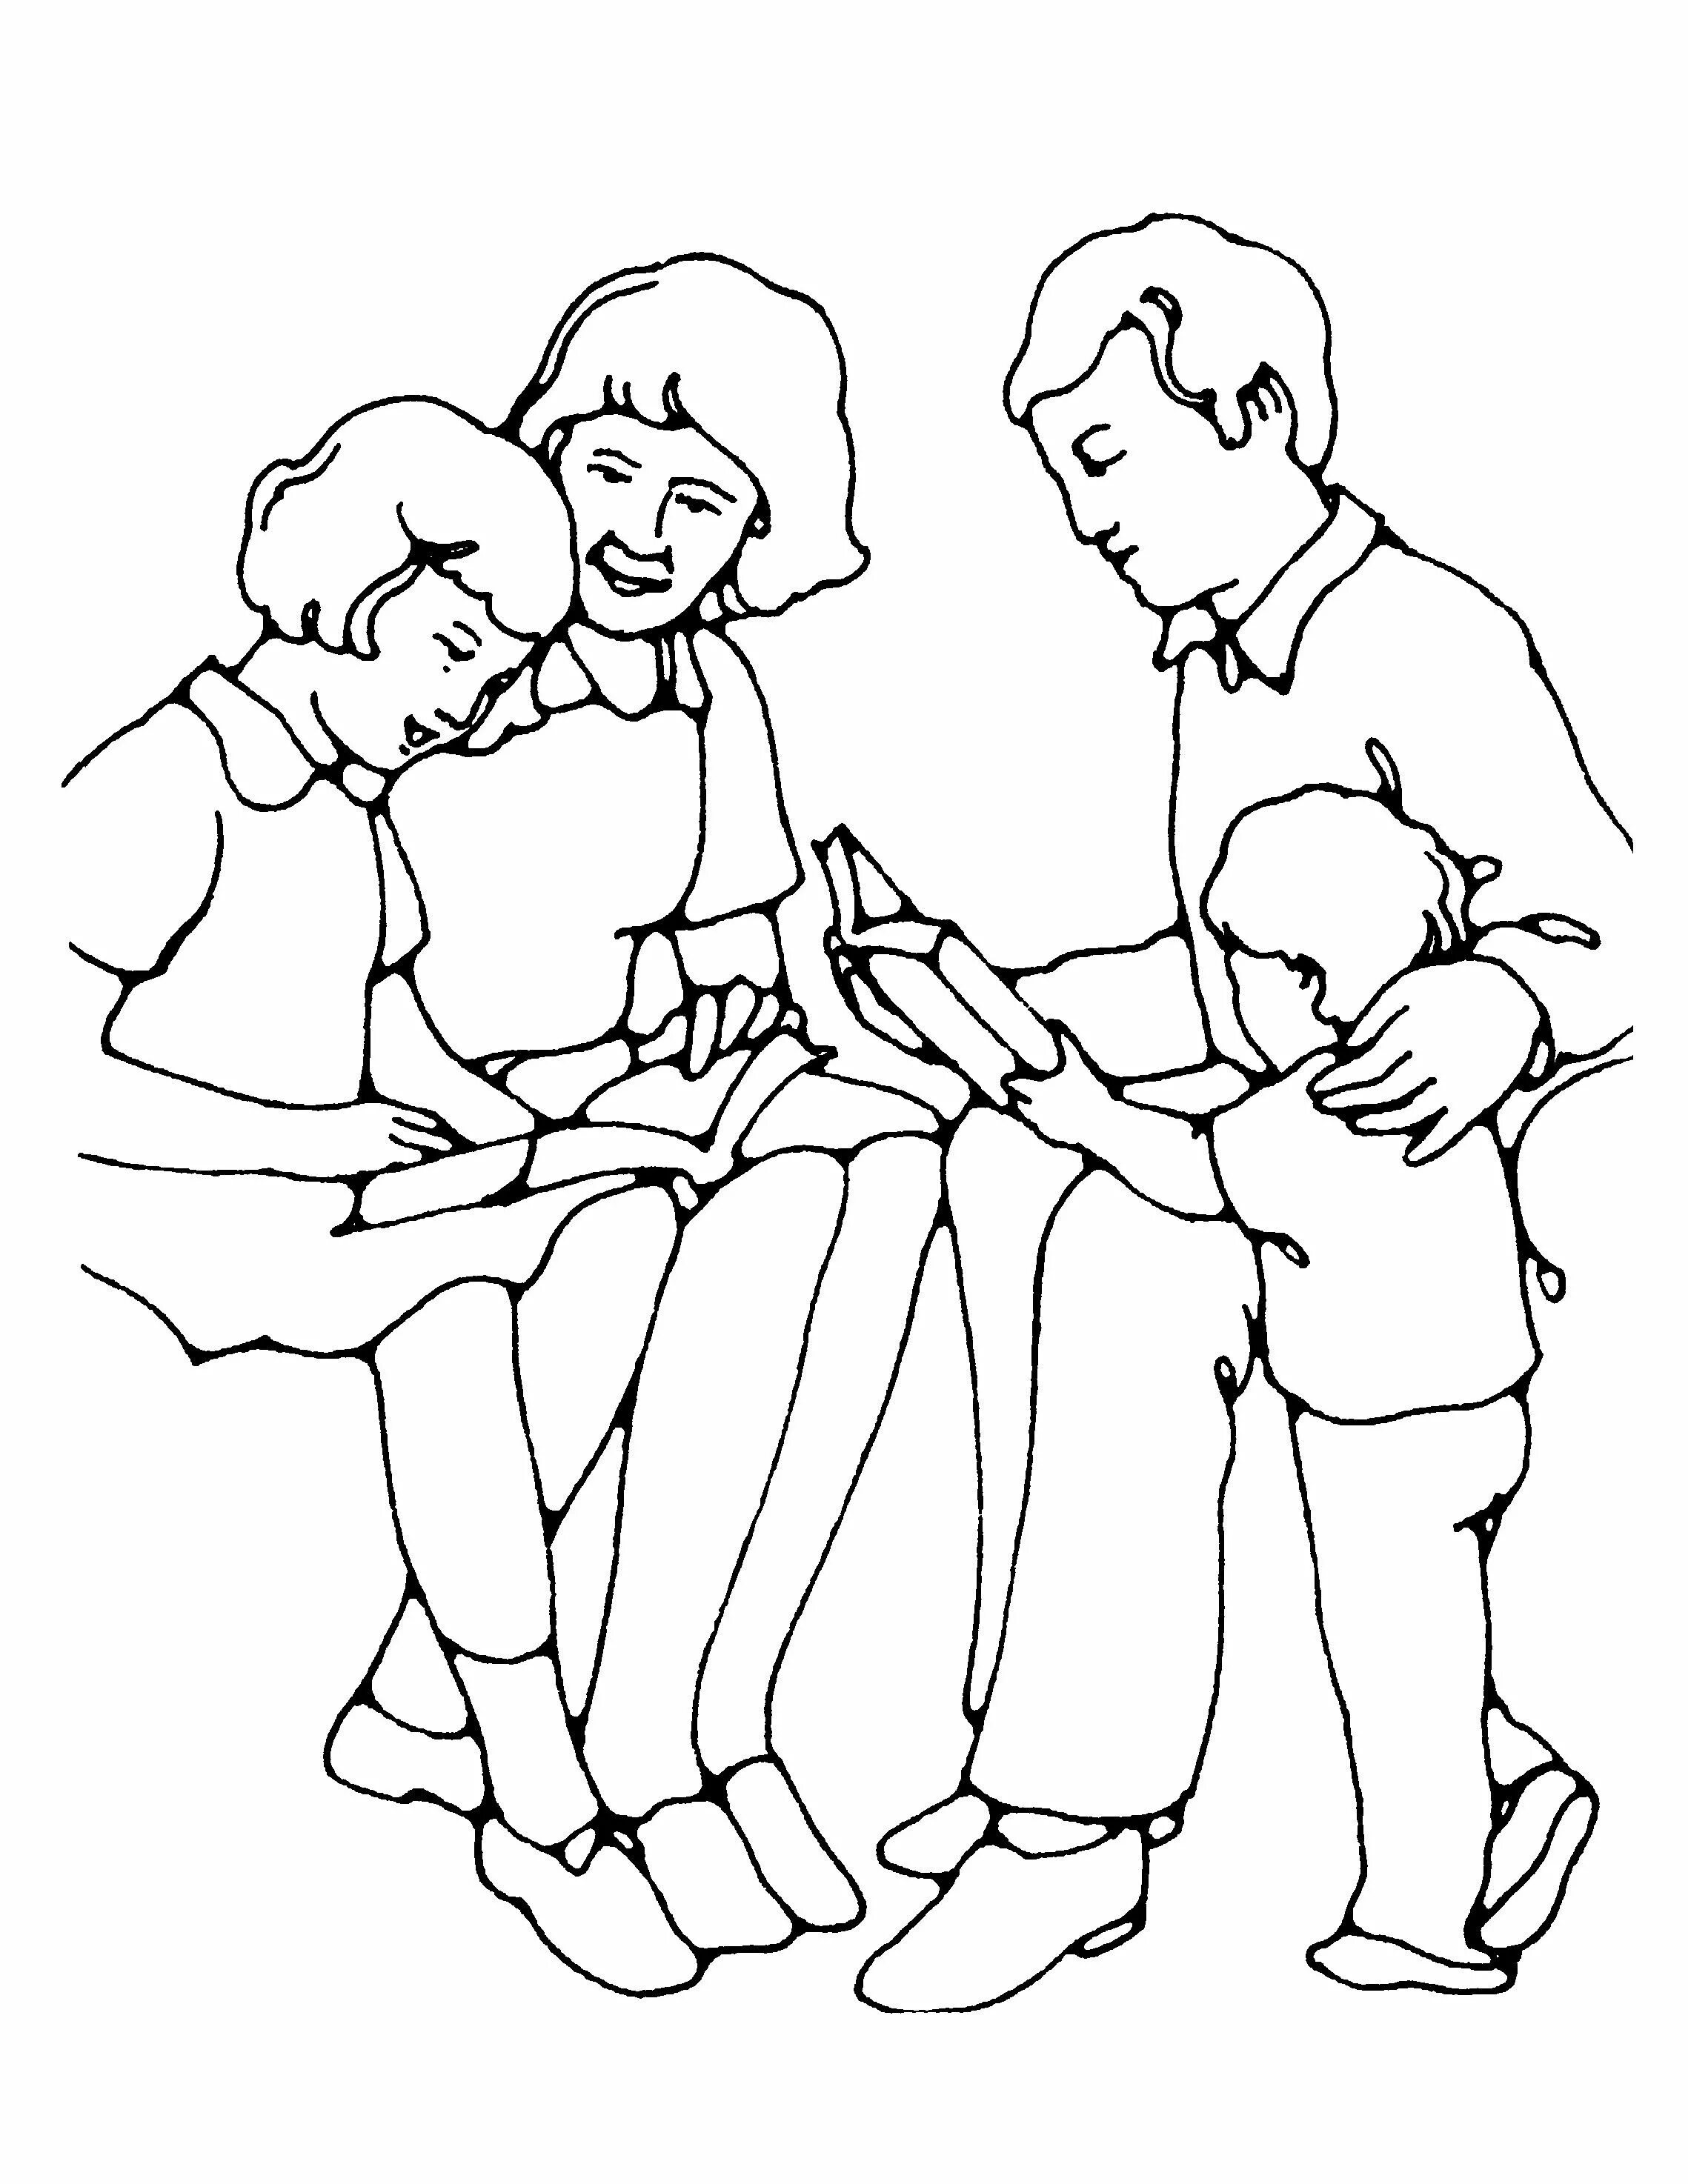 Раскраска семья. Семья раскраска для детей. Раскраска папа. Рисунок для раскрашивания семья. Нарисовать маму папу сестру и брата